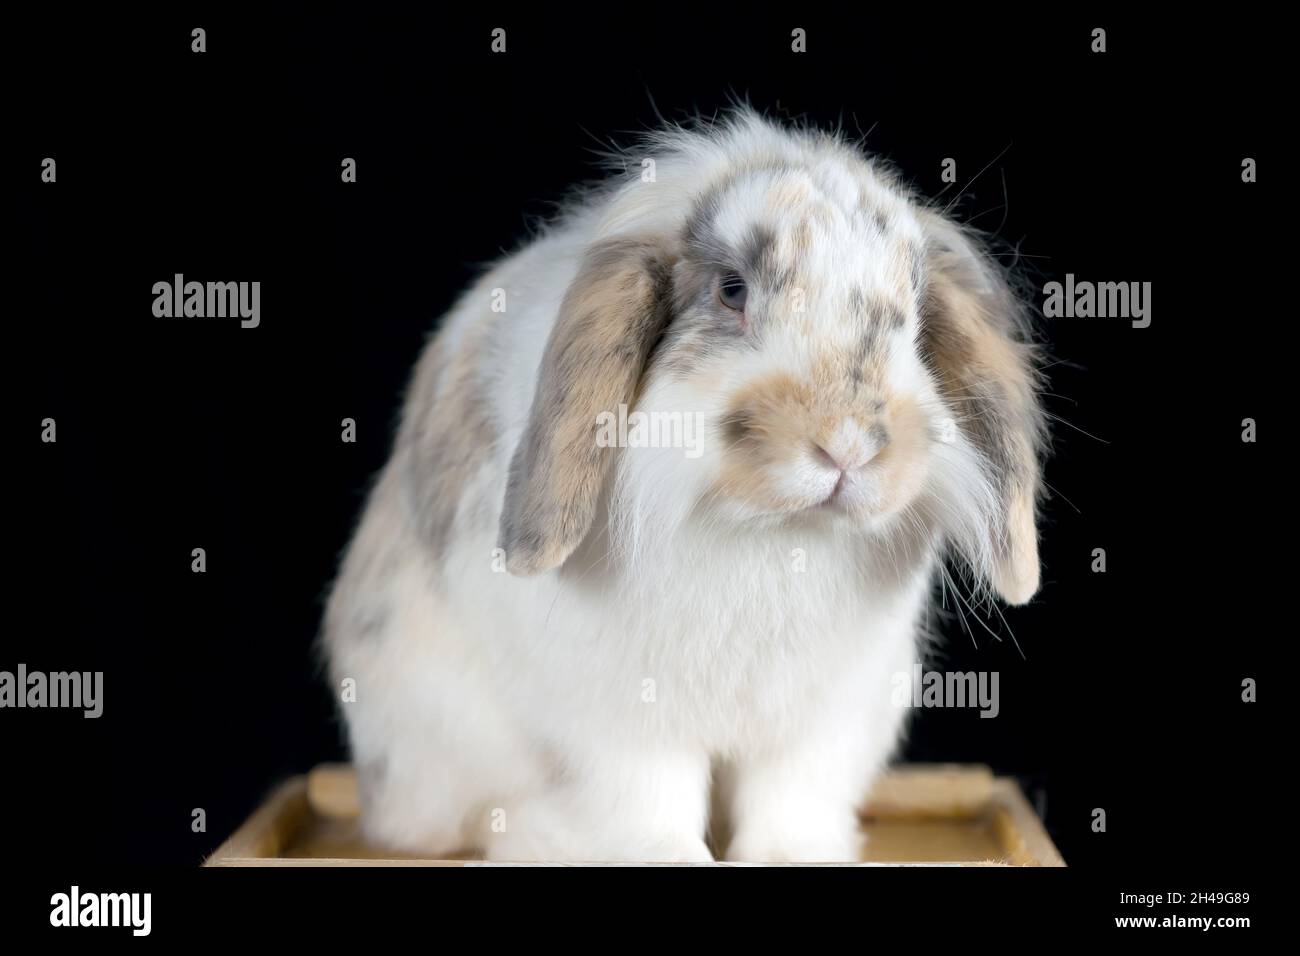 Lindo conejo de lop blanco y de topos marrones posando sobre fondo negro Foto de stock